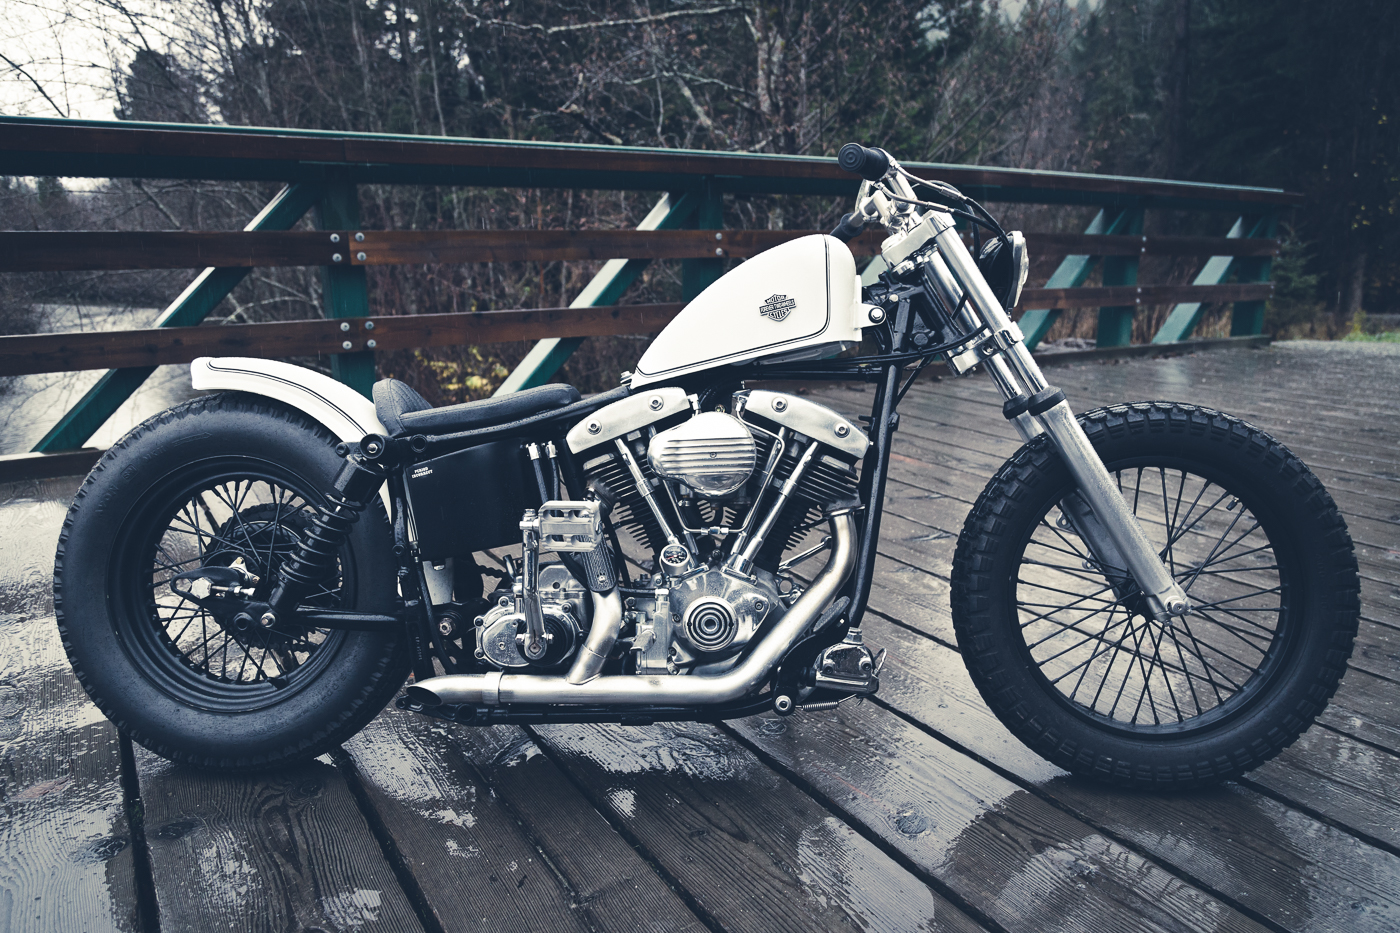 Todd Schumlick's custom Harley Davidson Shovelhead